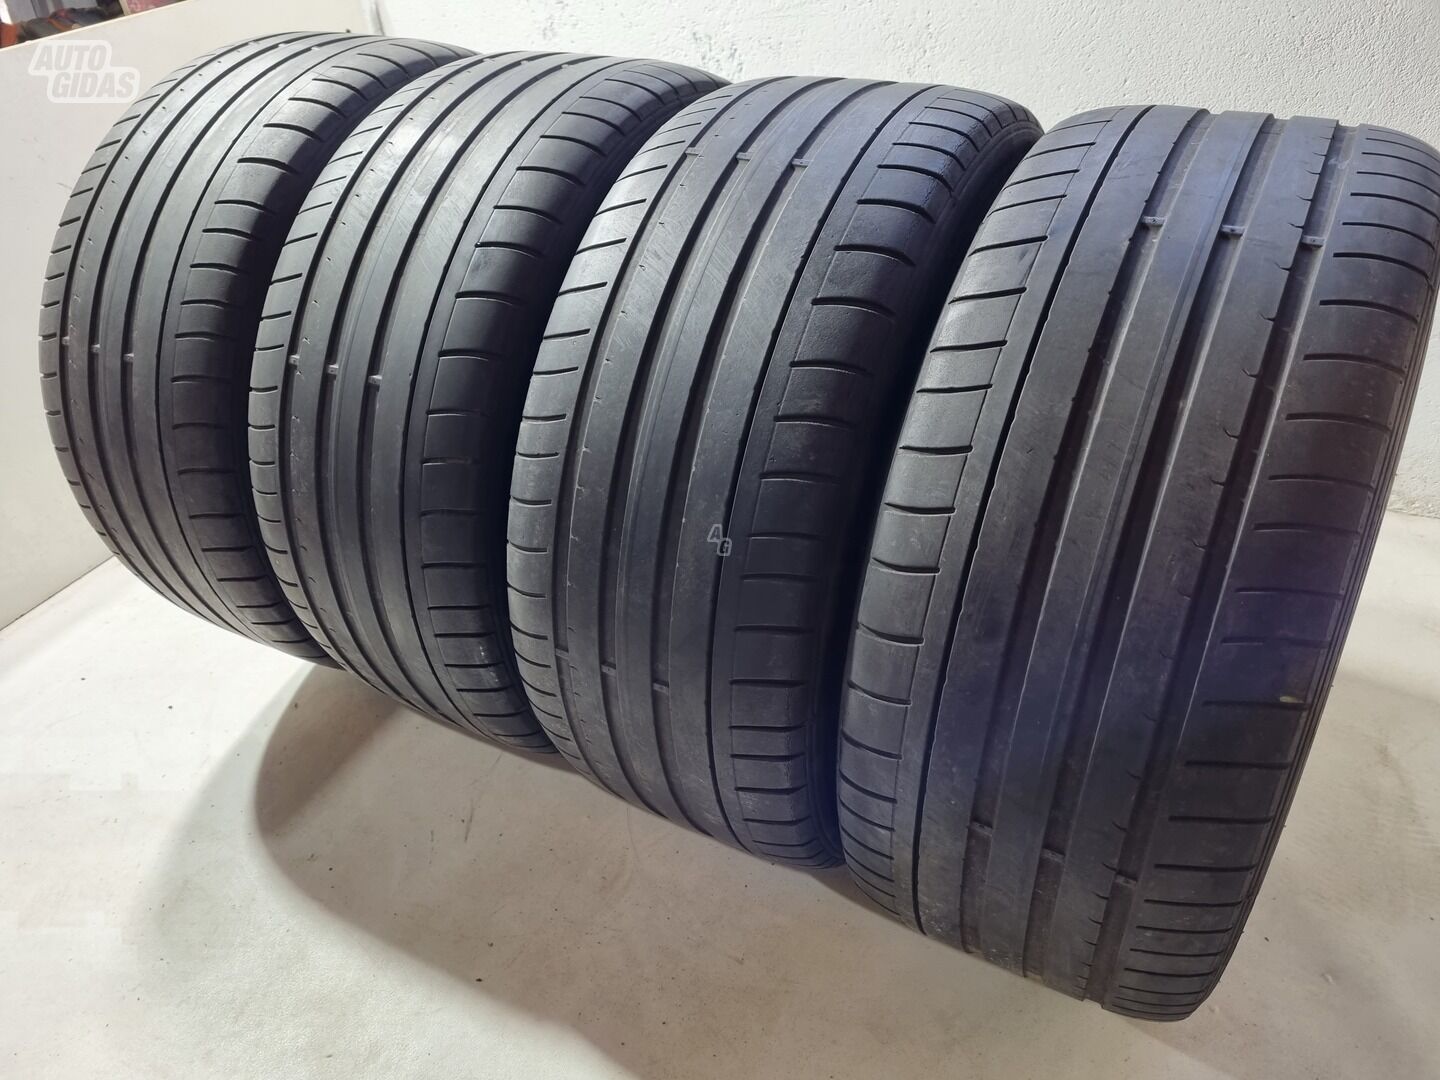 Dunlop 3-4mm R19 summer tyres passanger car